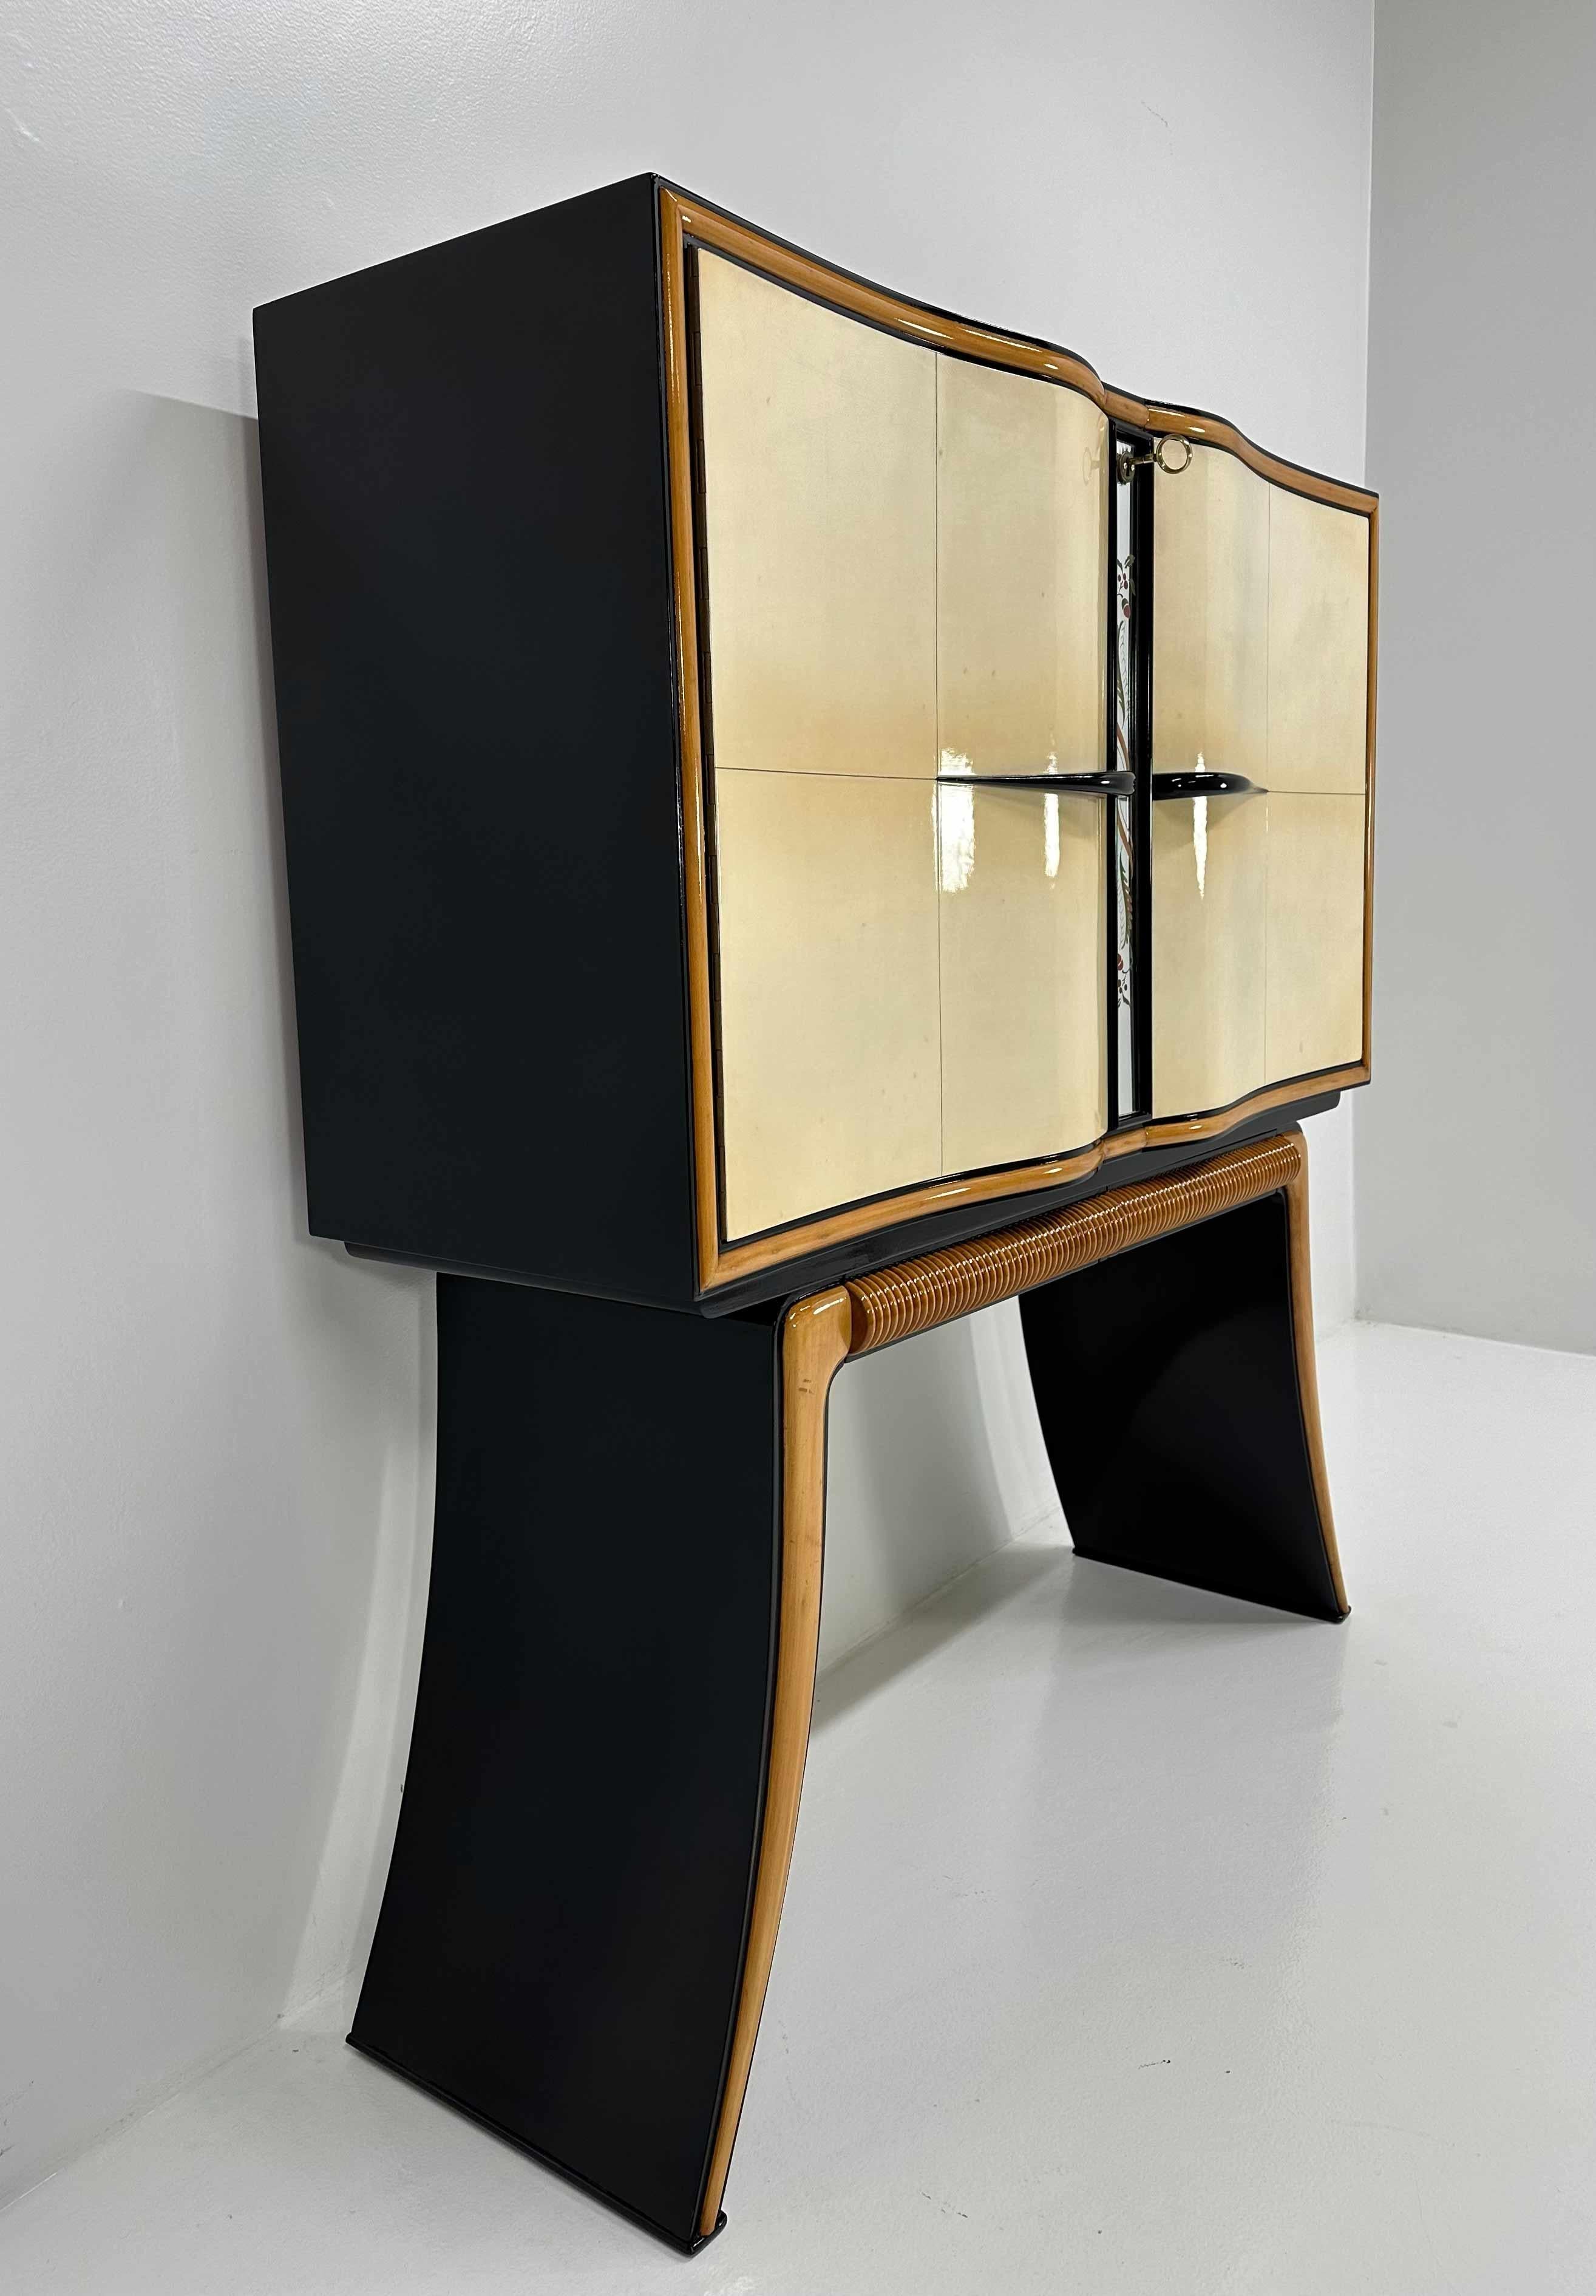 Italian Art Deco Paolo Buffa Parchment, Maple, Black, Mirrors Bar Cabinet, 40s For Sale 3